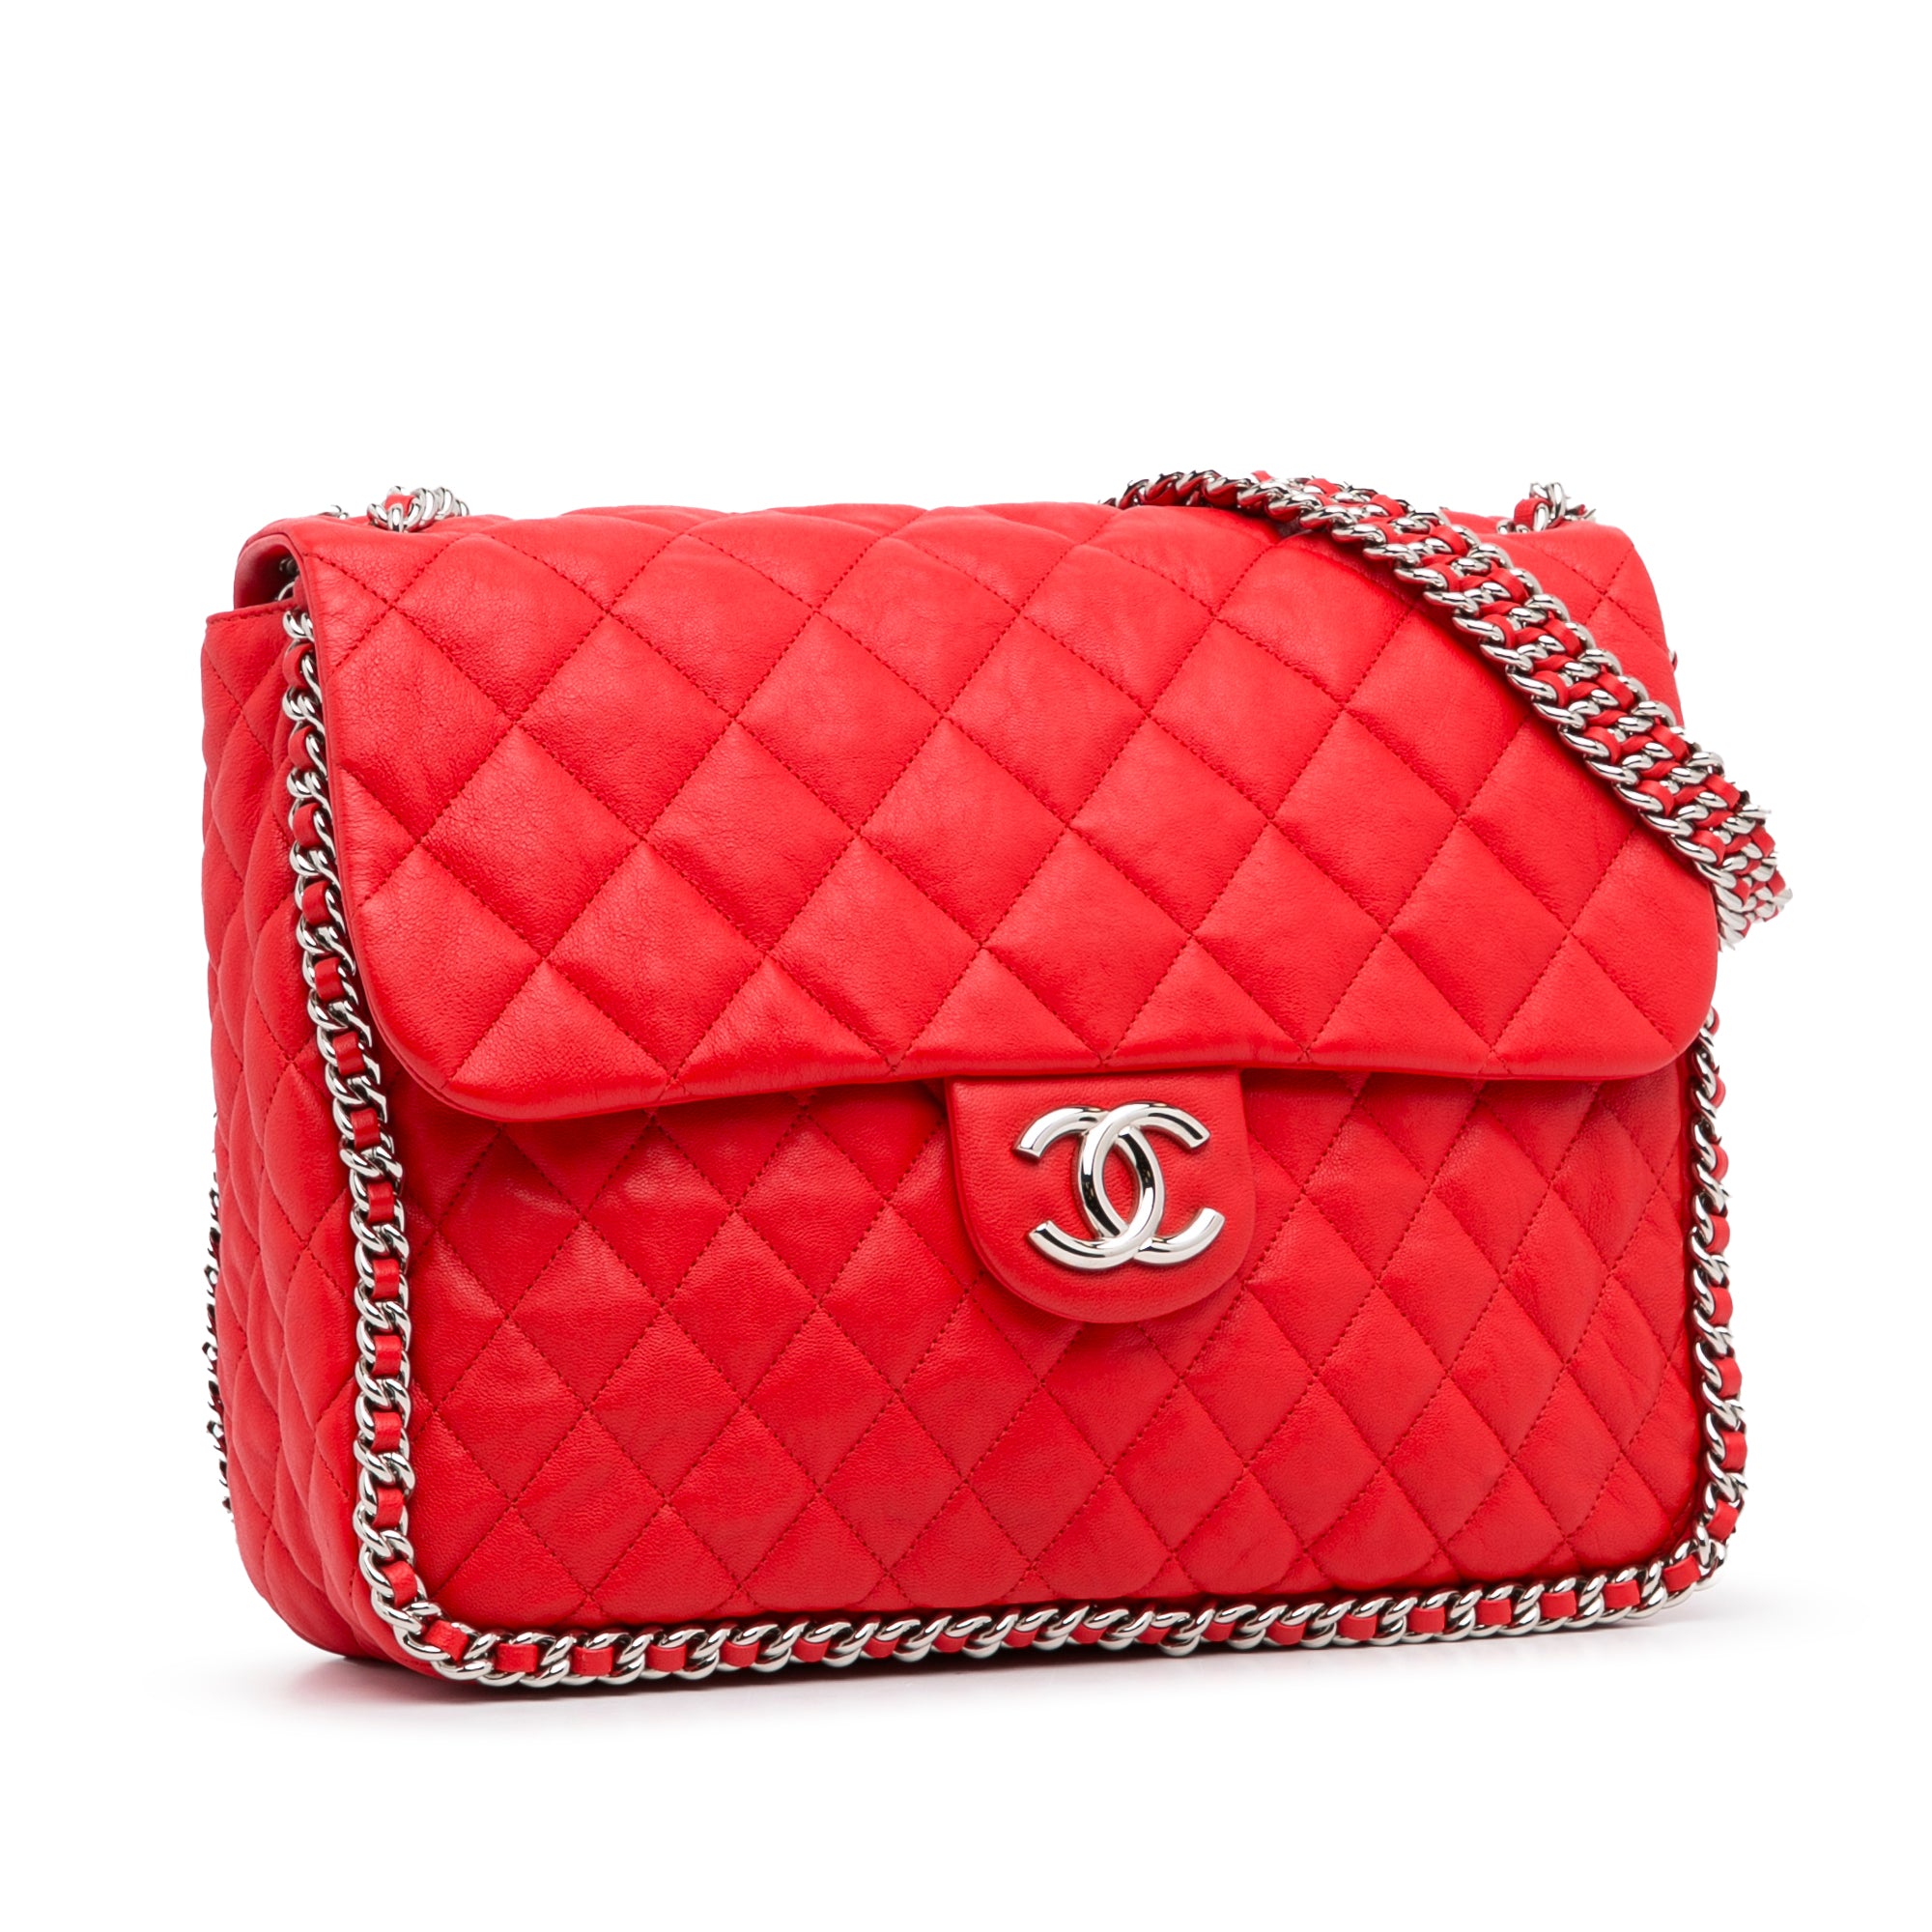 Chanel Vintage Flap Lambskin Leather Shoulder Bag Red